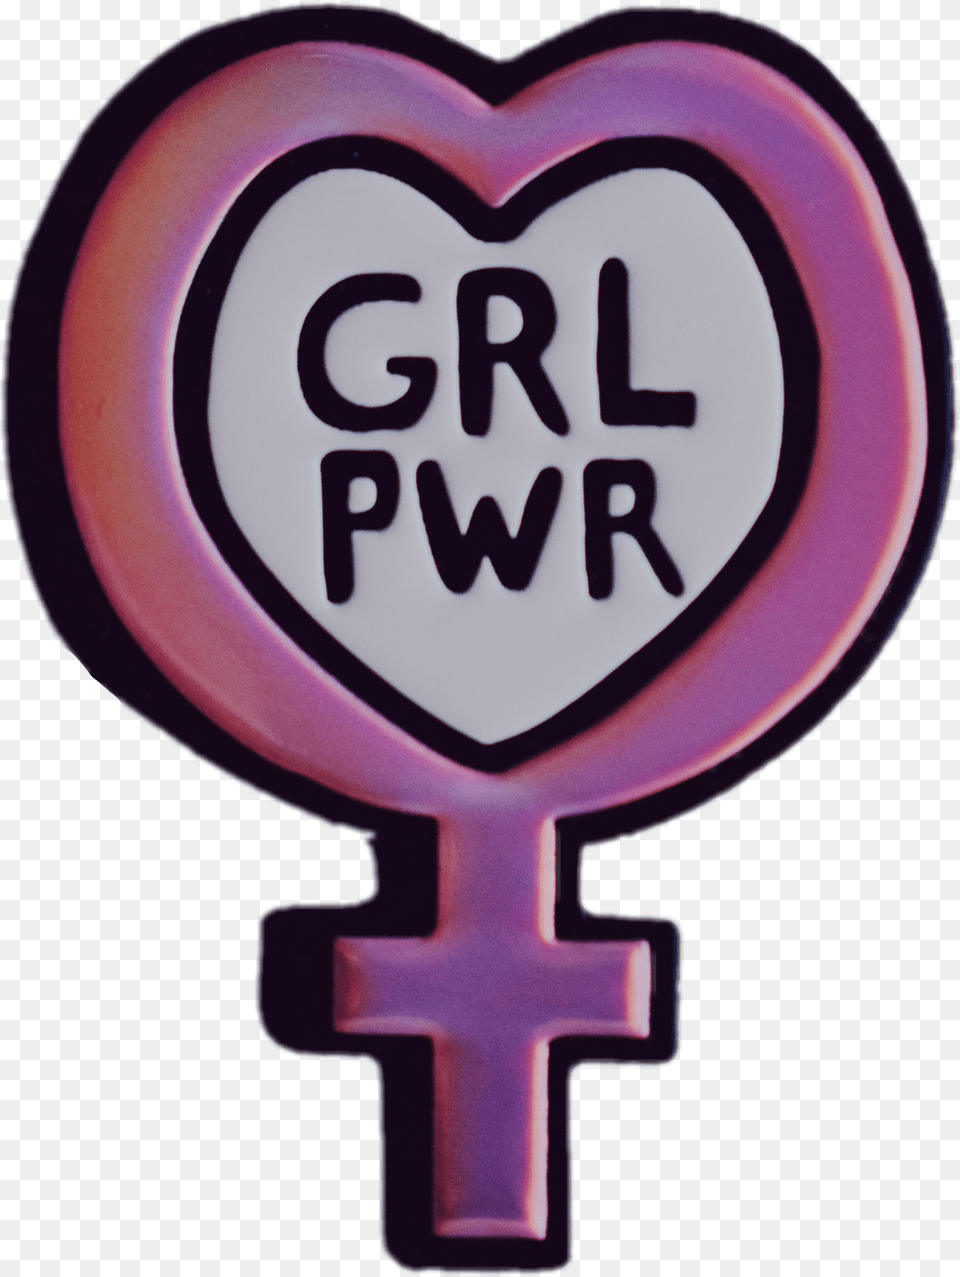 Grlpwr Feminism Feminist Feministpower Tumblr Sticker Tumblr Feminist Free Transparent Png